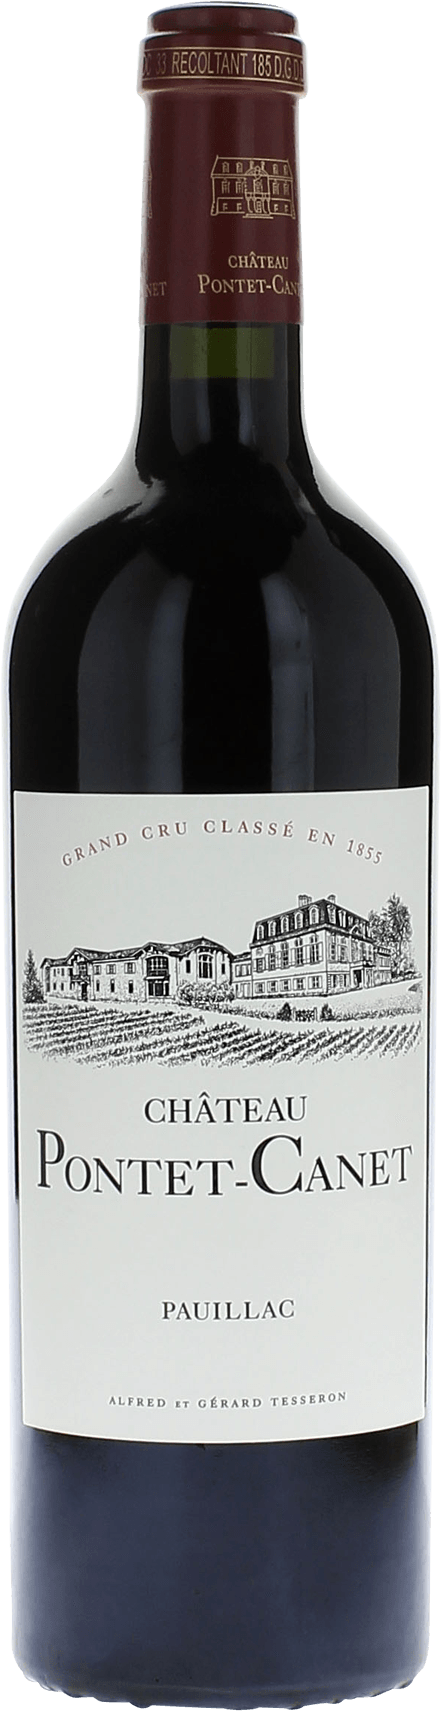 Pontet canet 2002 5me Grand cru class Pauillac, Bordeaux rouge